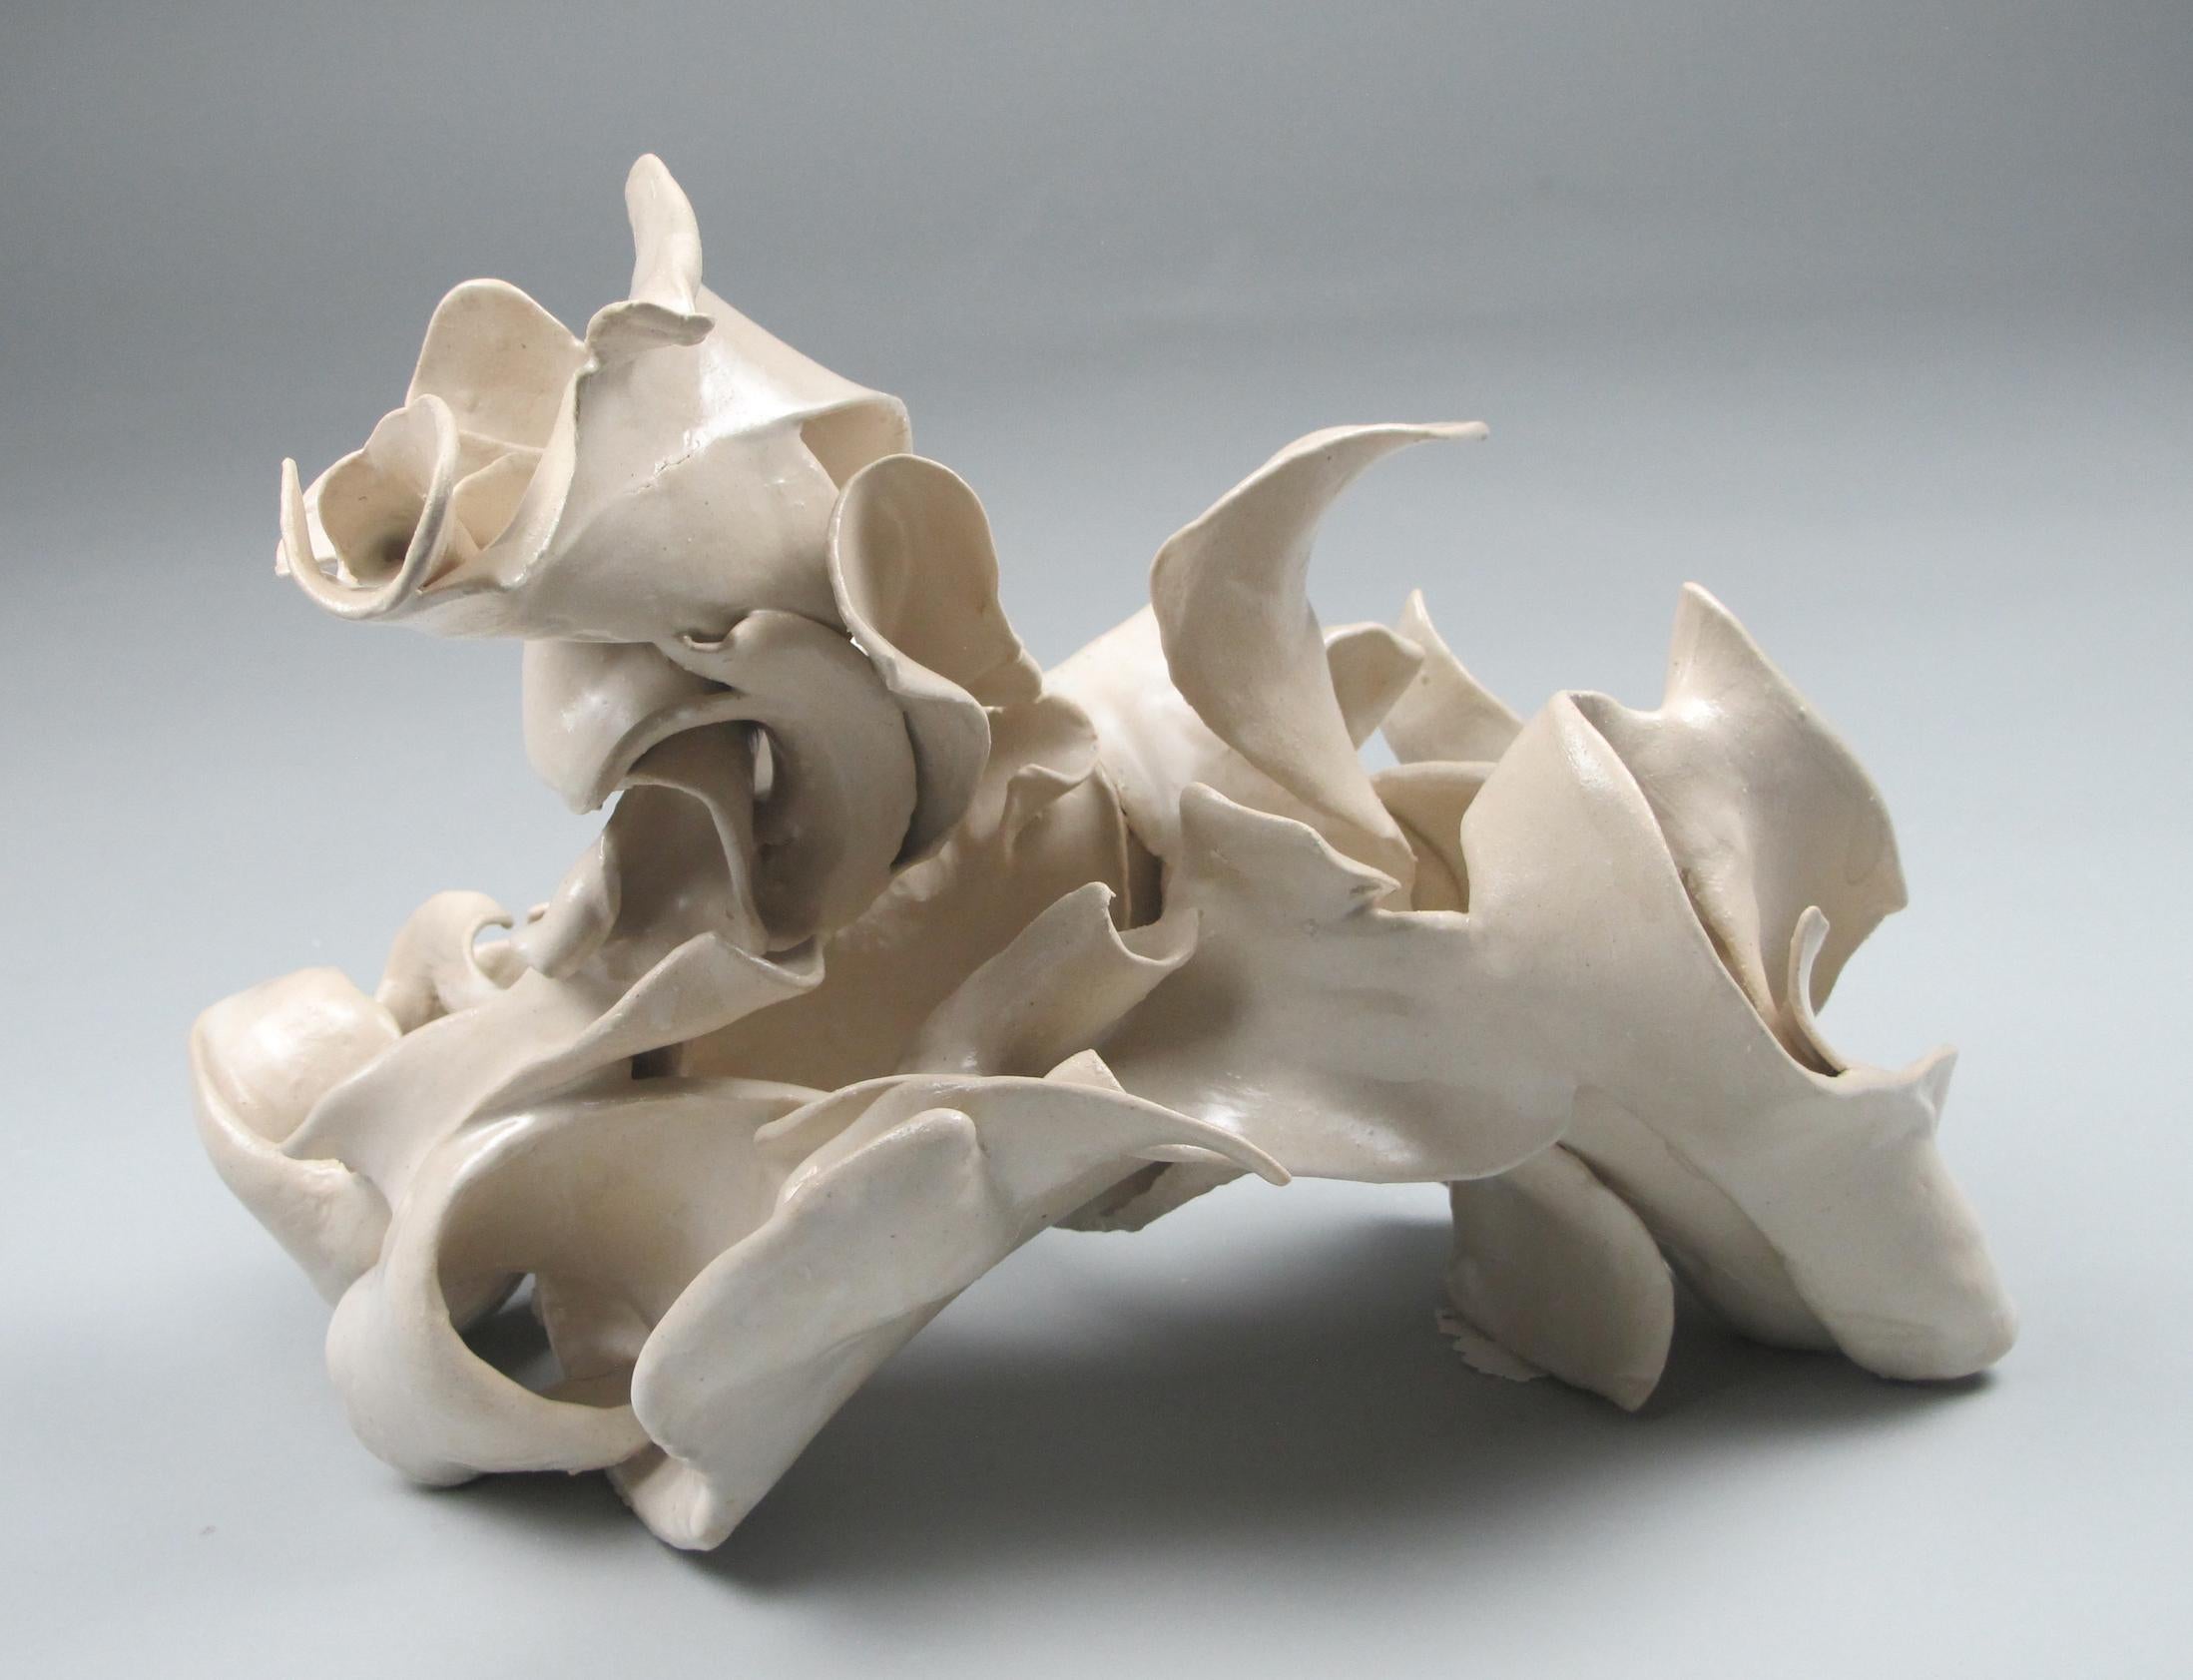 "Furl", gestural, contemporary, ceramic, white, cream, stoneware, sculpture - Sculpture by Sara Fine-Wilson